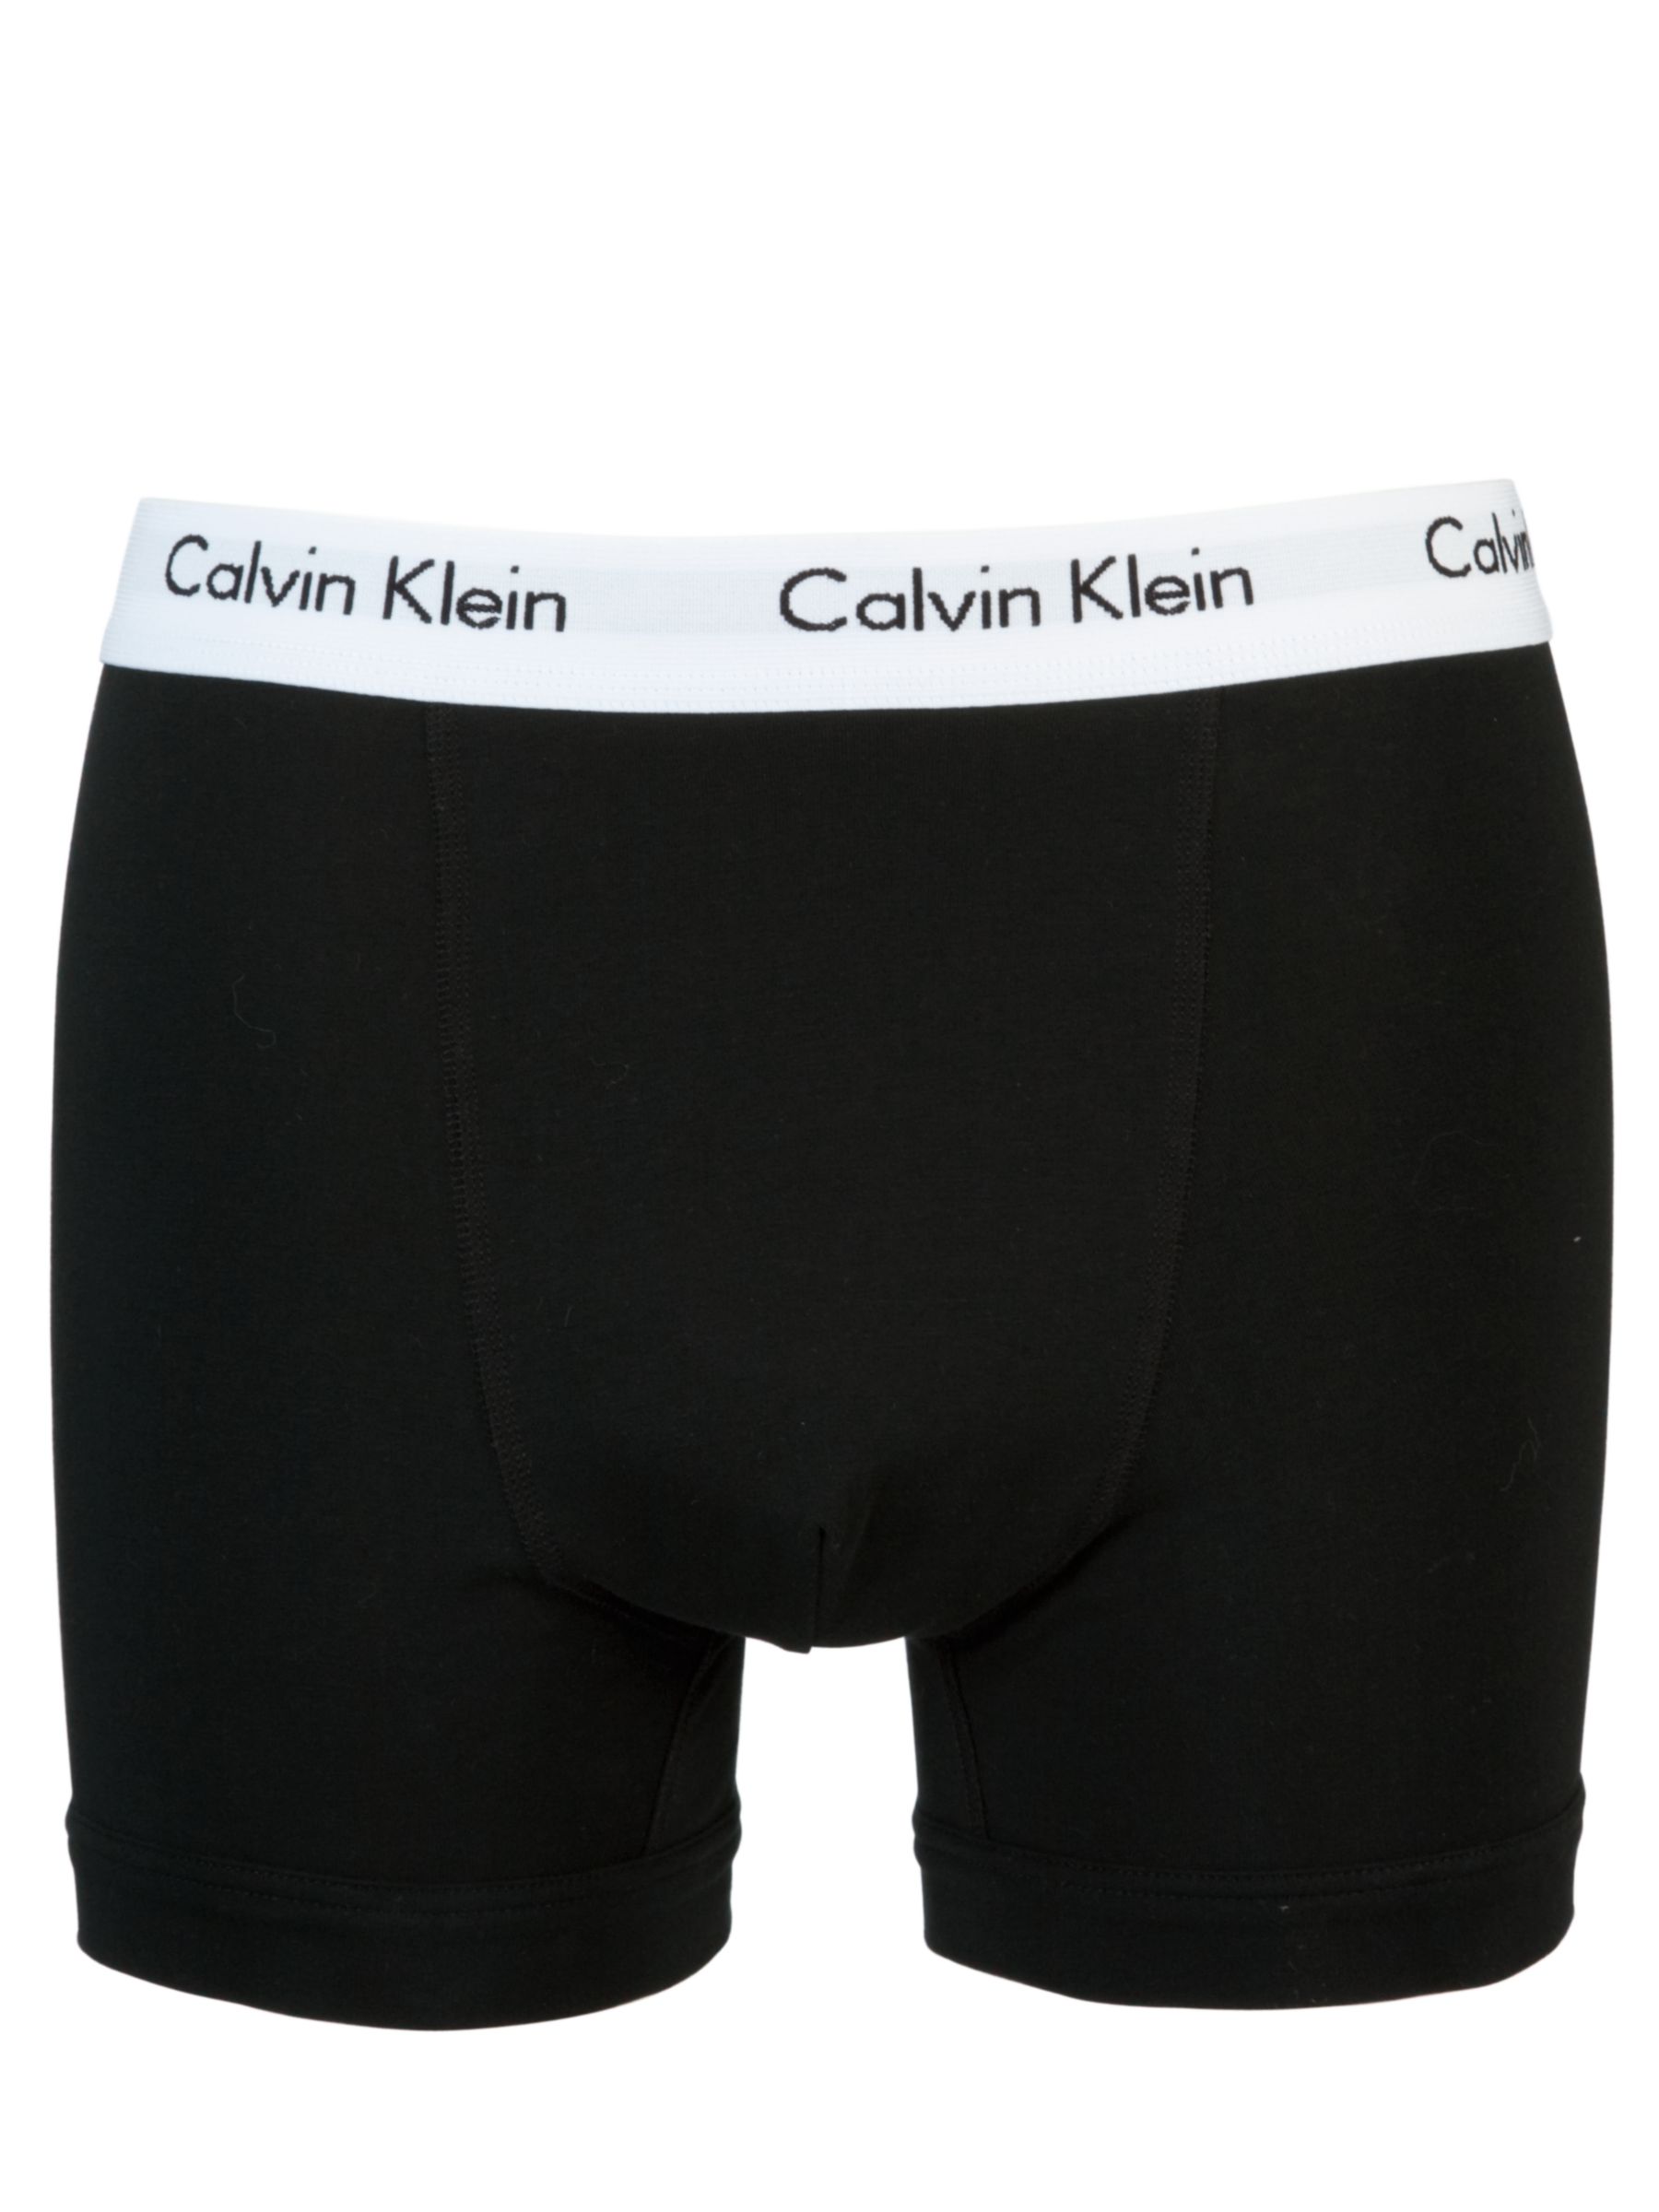 Calvin Klein Underwear Cotton Stretch Trunks, Pack of 3, White/Grey ...